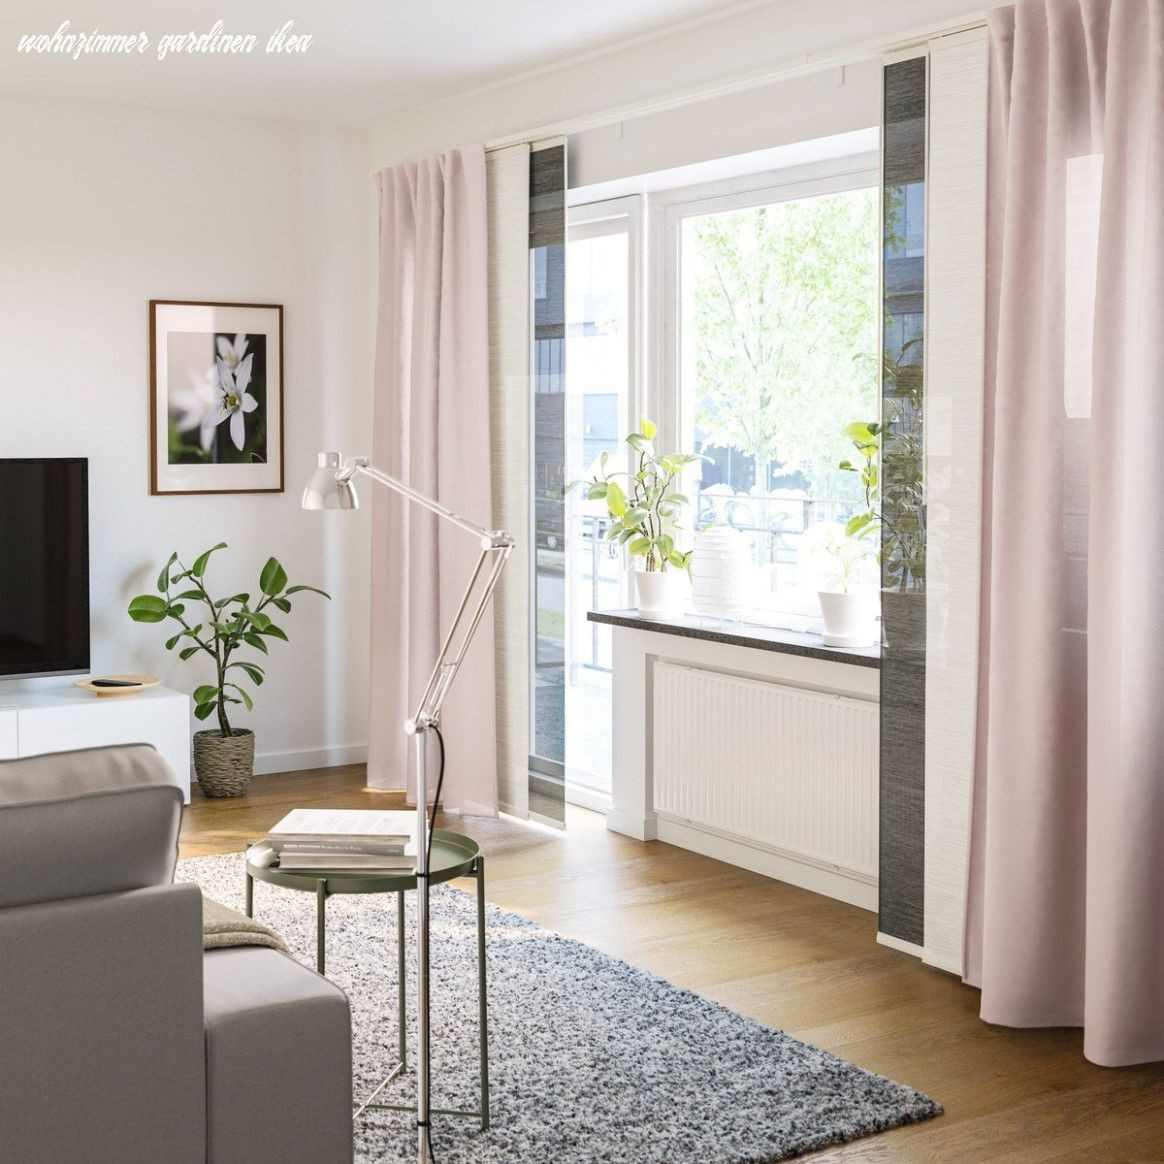 Sieben Schnelle Tipps Für Wohnzimmer Gardinen Ikea | Panel in Modern Gardinen Wohnzimmer Ikea